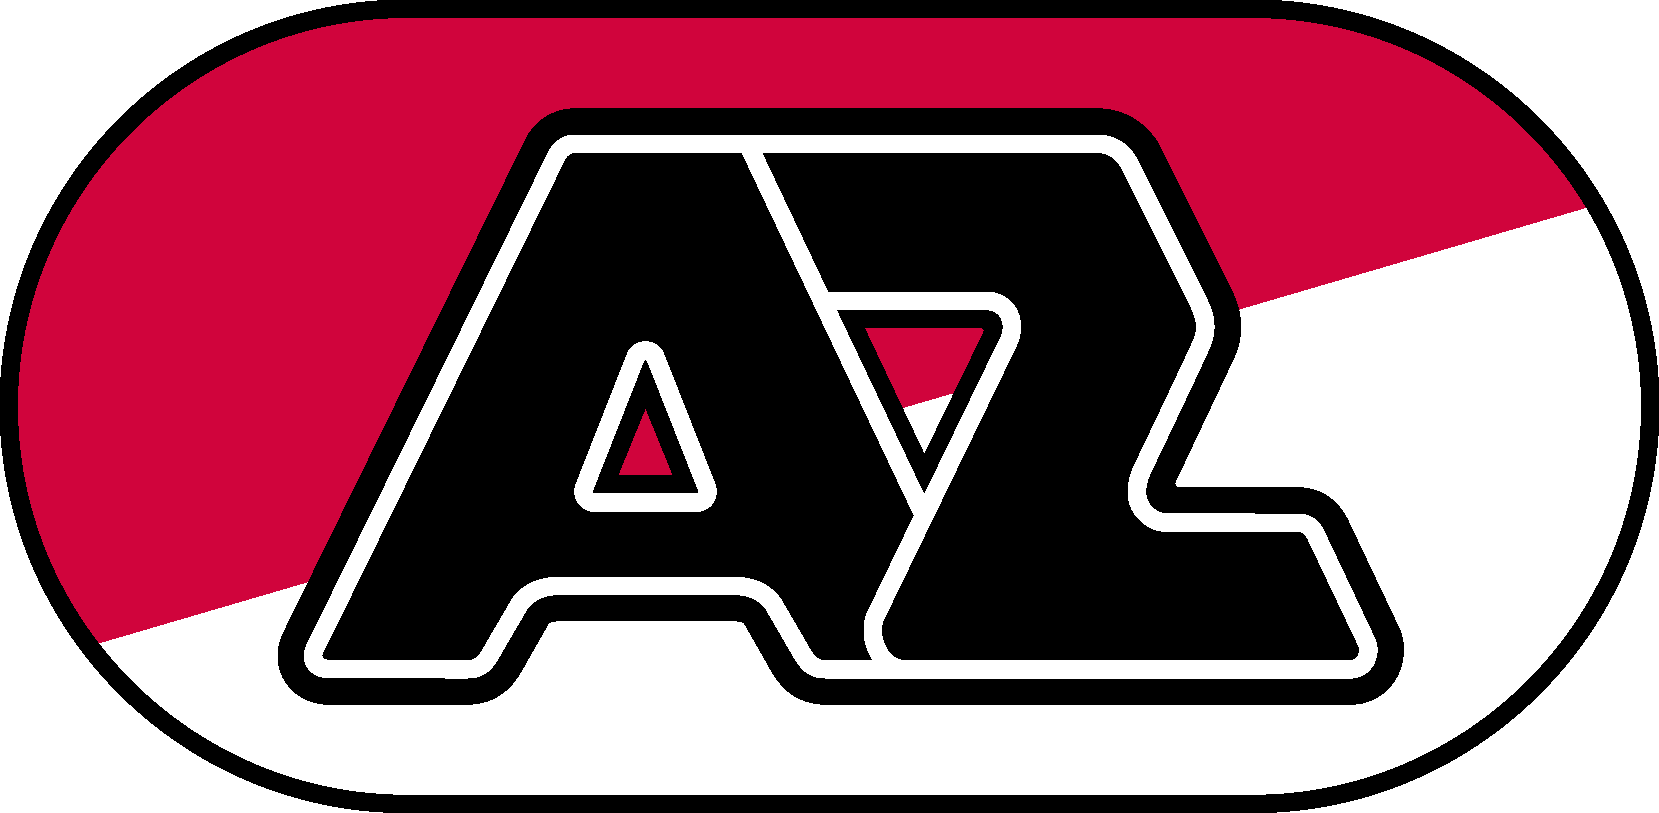 AZ Logo [Alkmaar Zaanstreek]